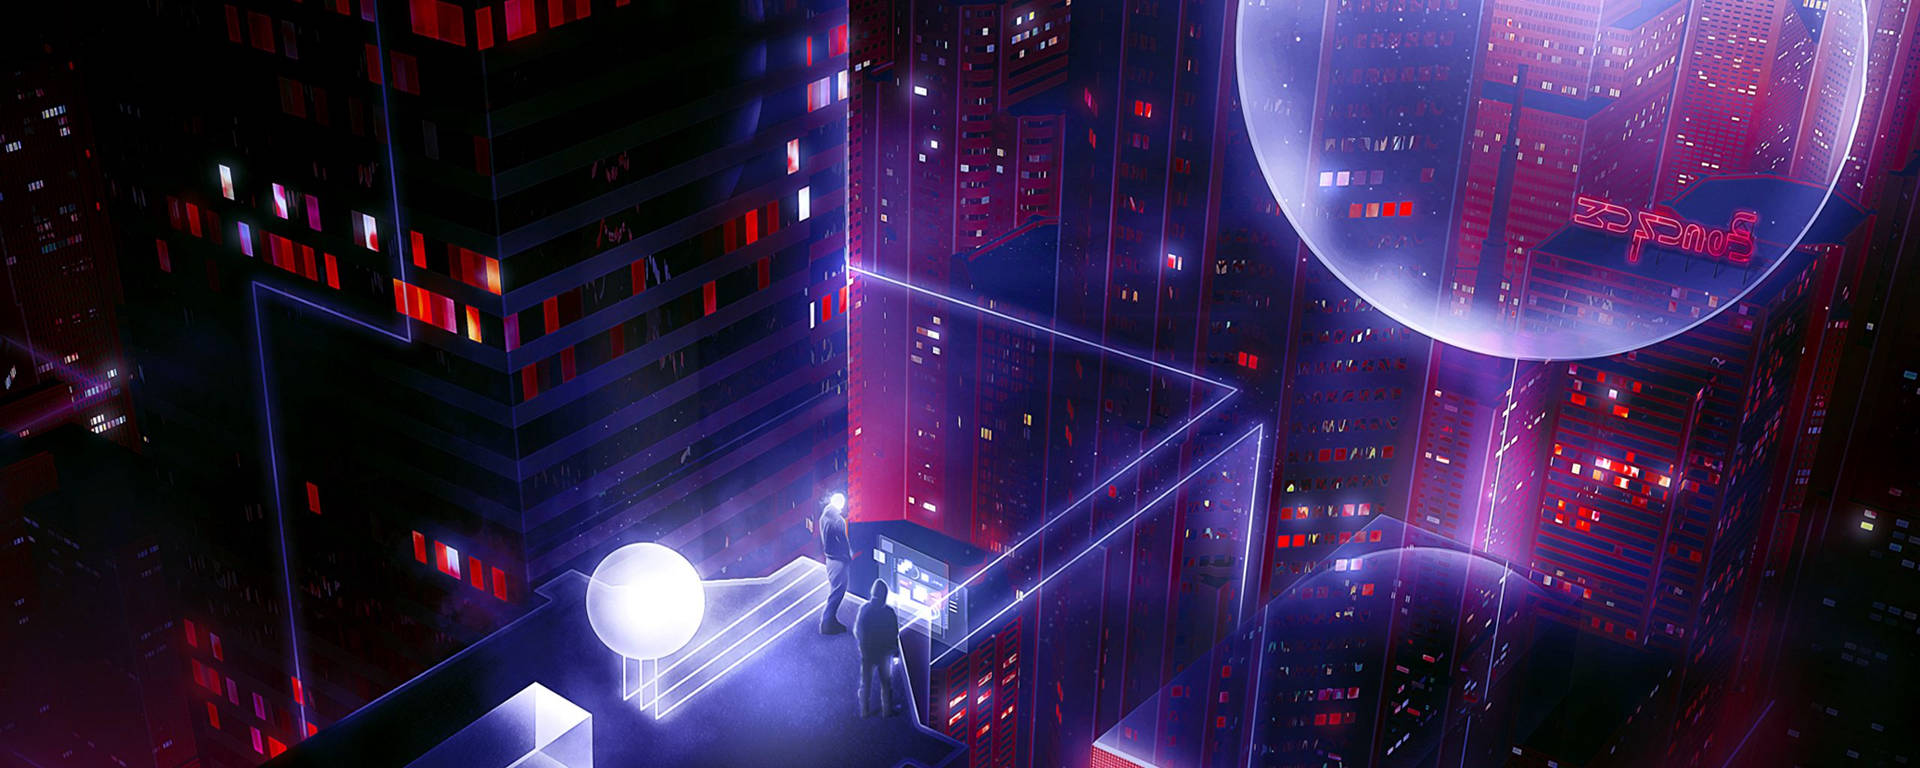 Ultrawide Cyberpunk Night City Buildings